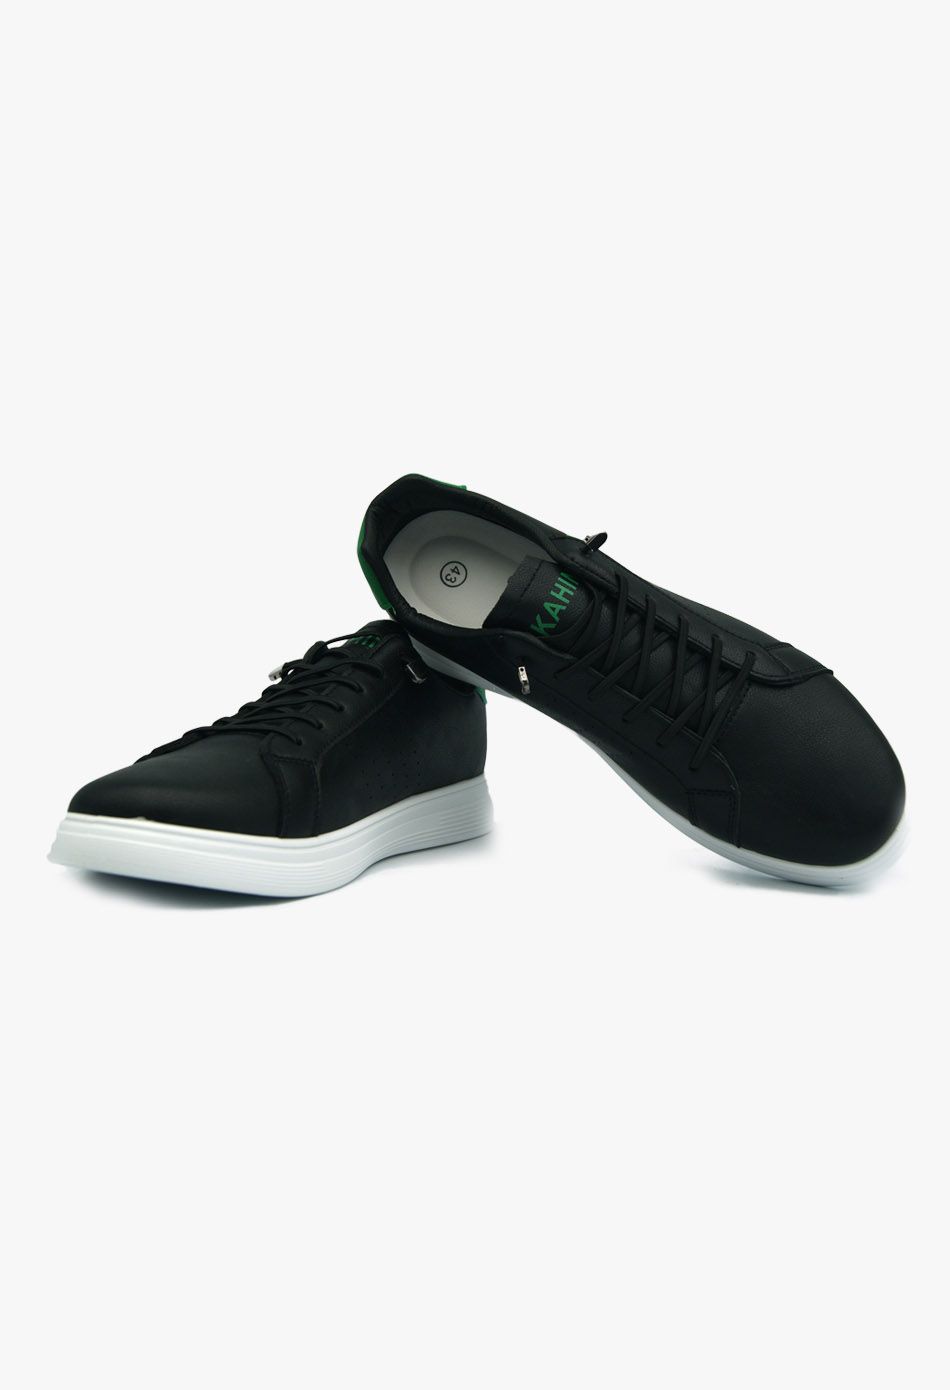 Ανδρικά Casual Sneakers Μαύρο / A69-black ΑΘΛΗΤΙΚΑ & SNEAKERS joya.gr